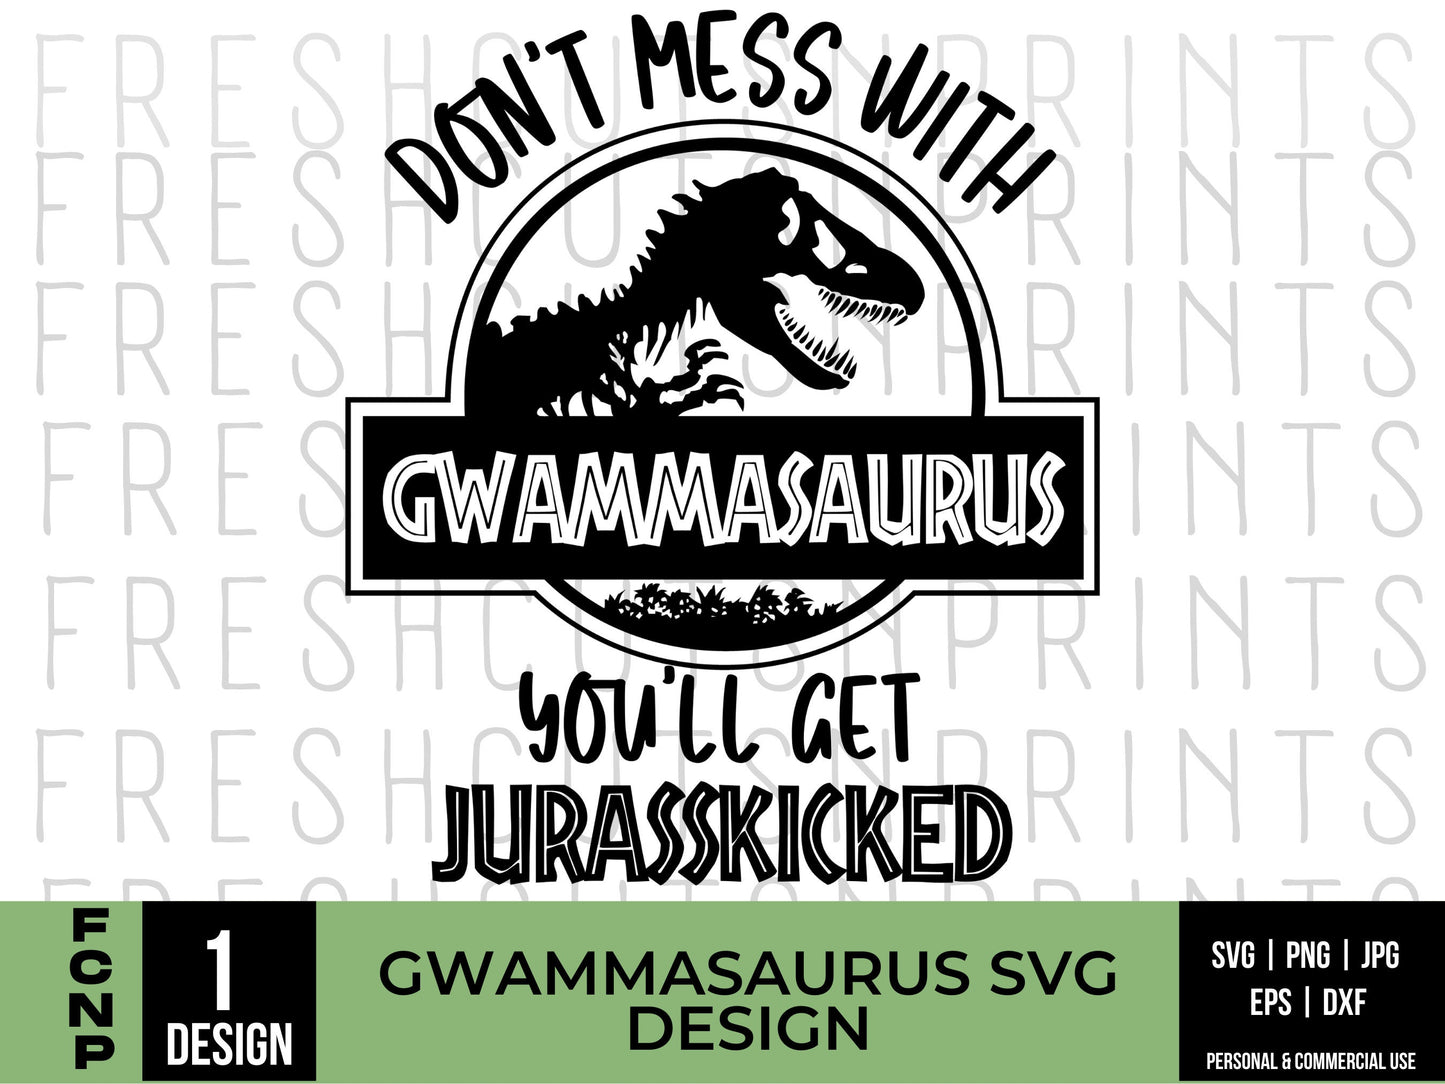 Gwammasaurus SVG, Jurasskicked svg, grandma svg, Family shirt svg, Best dad svg, Dinosaur grandma design, Gift for Grandma